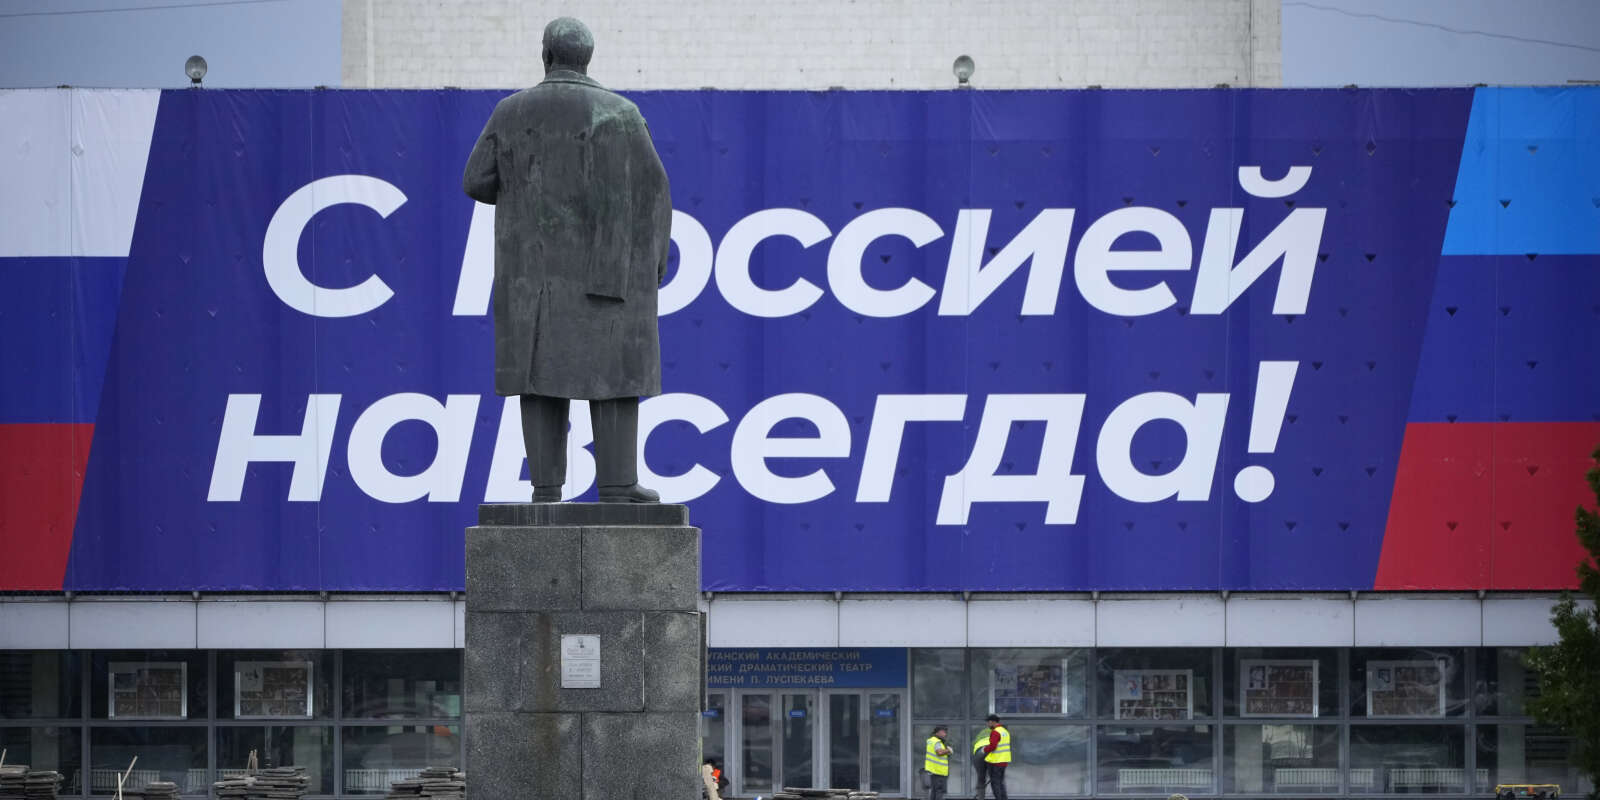 Devant une statue de Vladimir Lenine, une affiche clamant « Avec la Russie pour toujours ! », à Louhansk, en Ukraine, un jour après les résultats des référendus d’annexion de quatre régions à la Russie, le 28 septembre 2022.